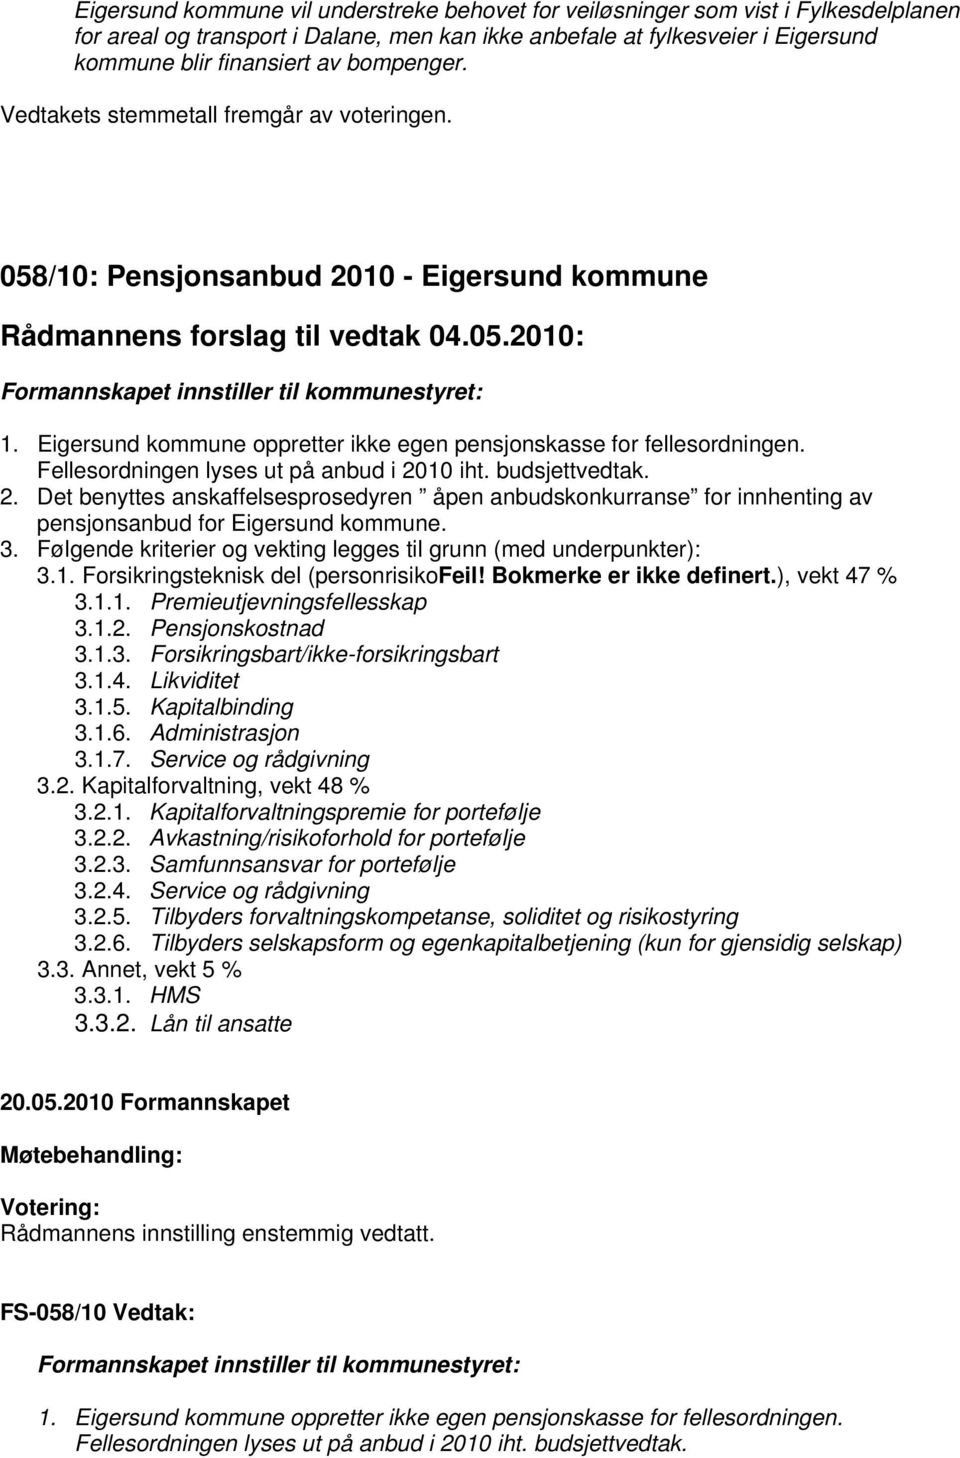 Eigersund kommune oppretter ikke egen pensjonskasse for fellesordningen. Fellesordningen lyses ut på anbud i 20